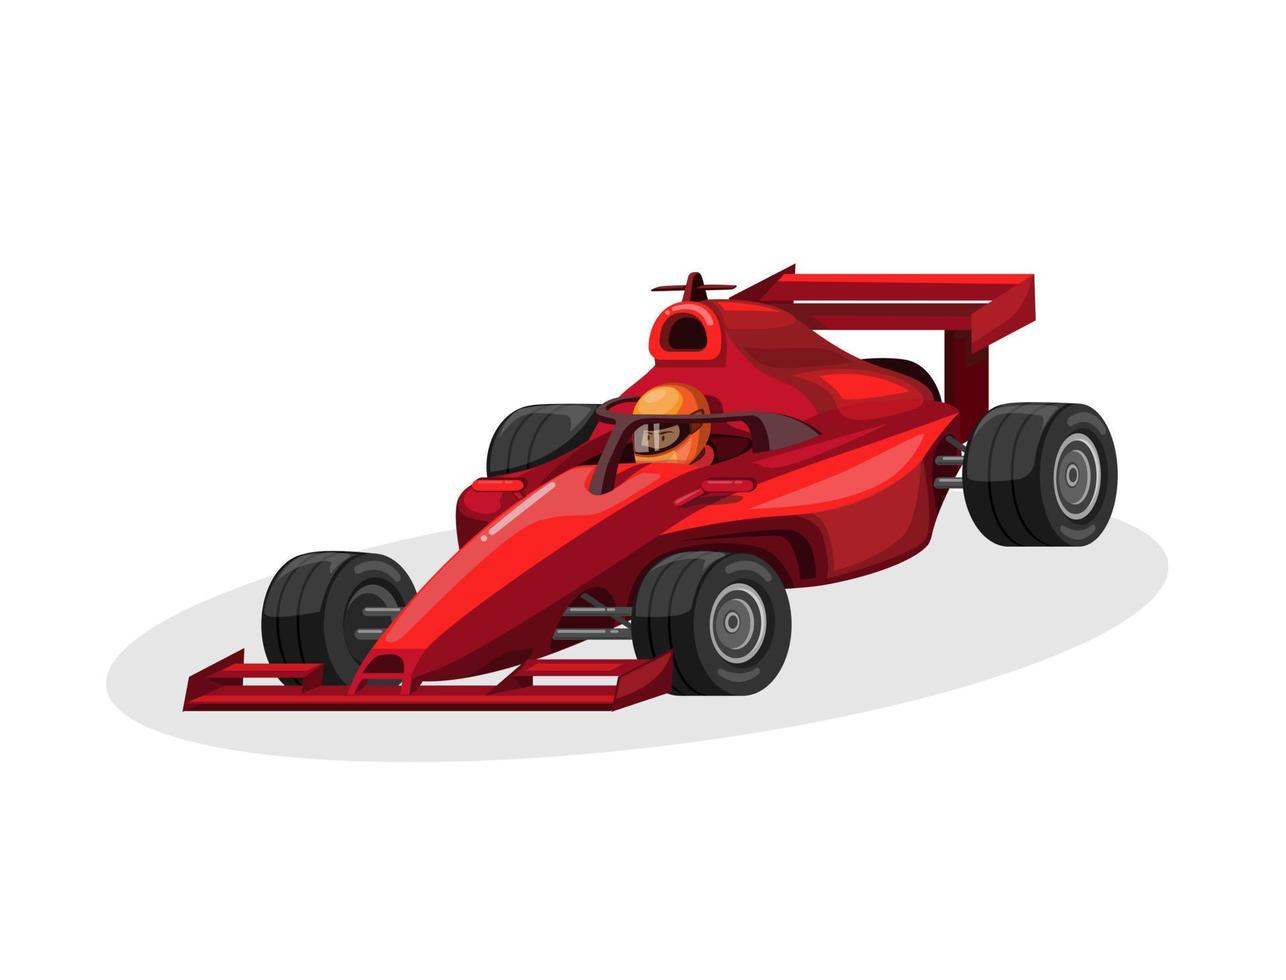 Formel 1 förare och racerbil med halo aka huvudskydd i röd färg. ras sport konkurrens koncept tecknad illustration vektor på vit bakgrund